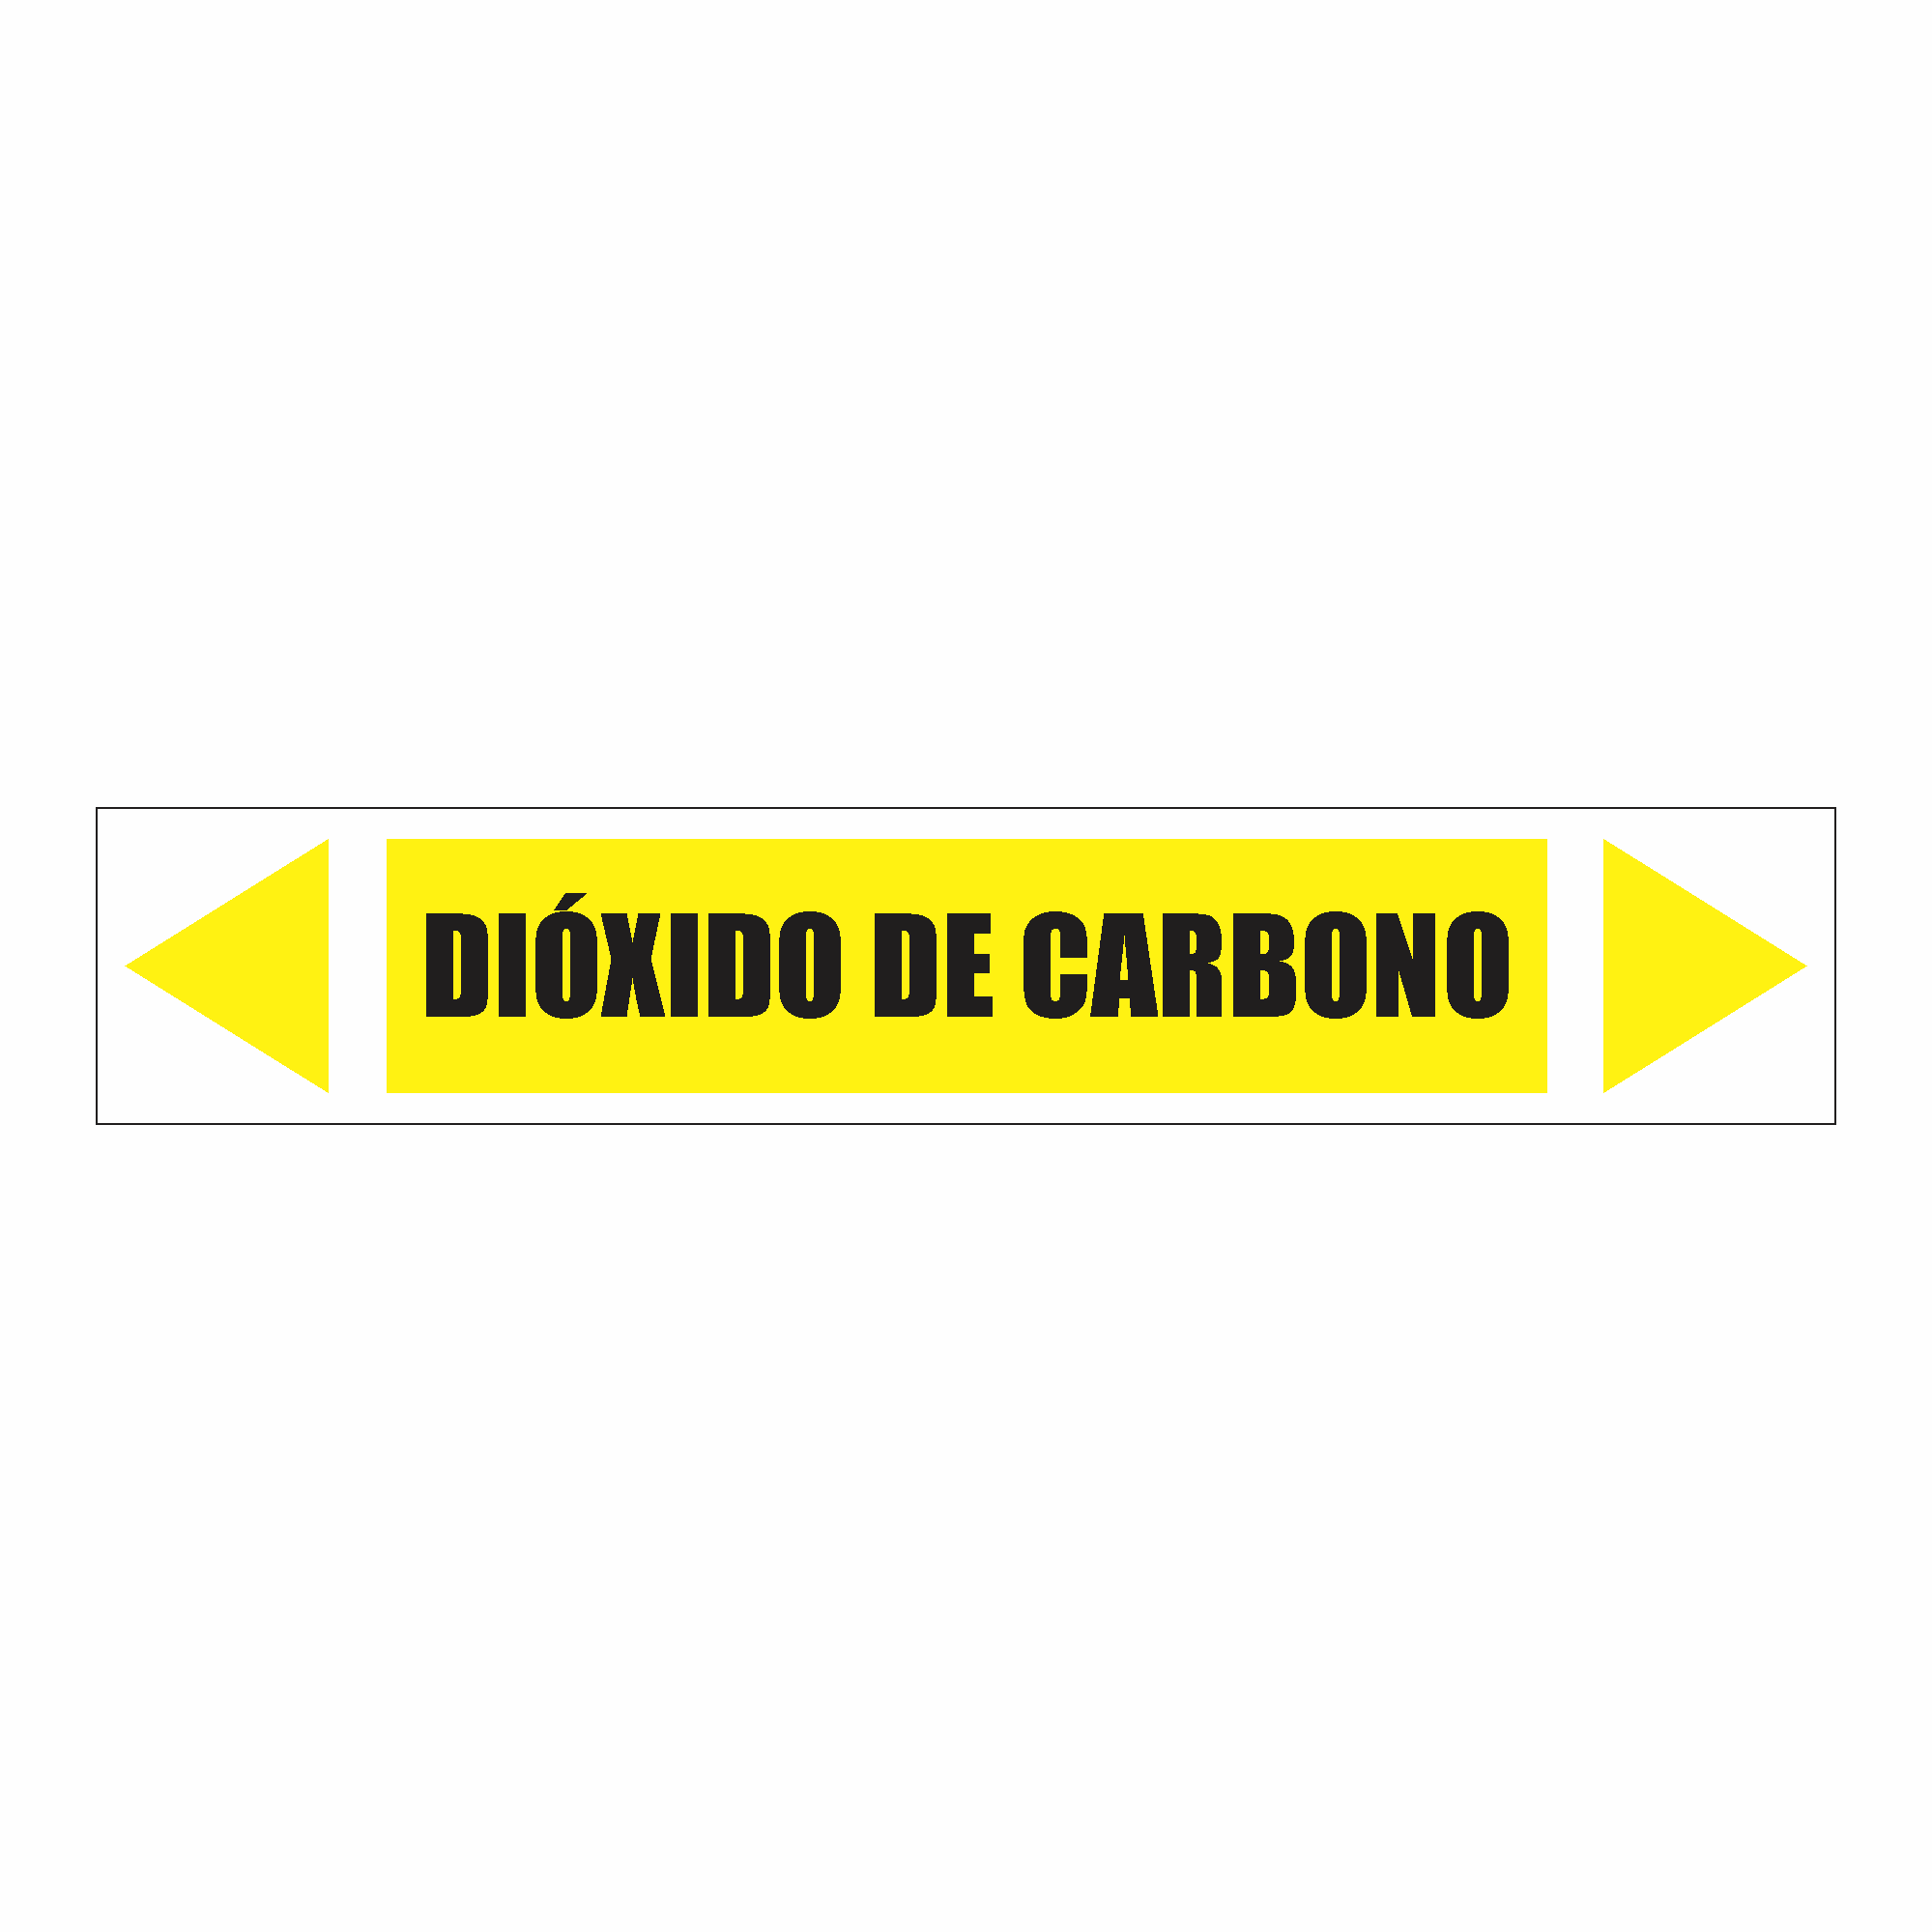 IDT 062 - Dióxido de Carbono